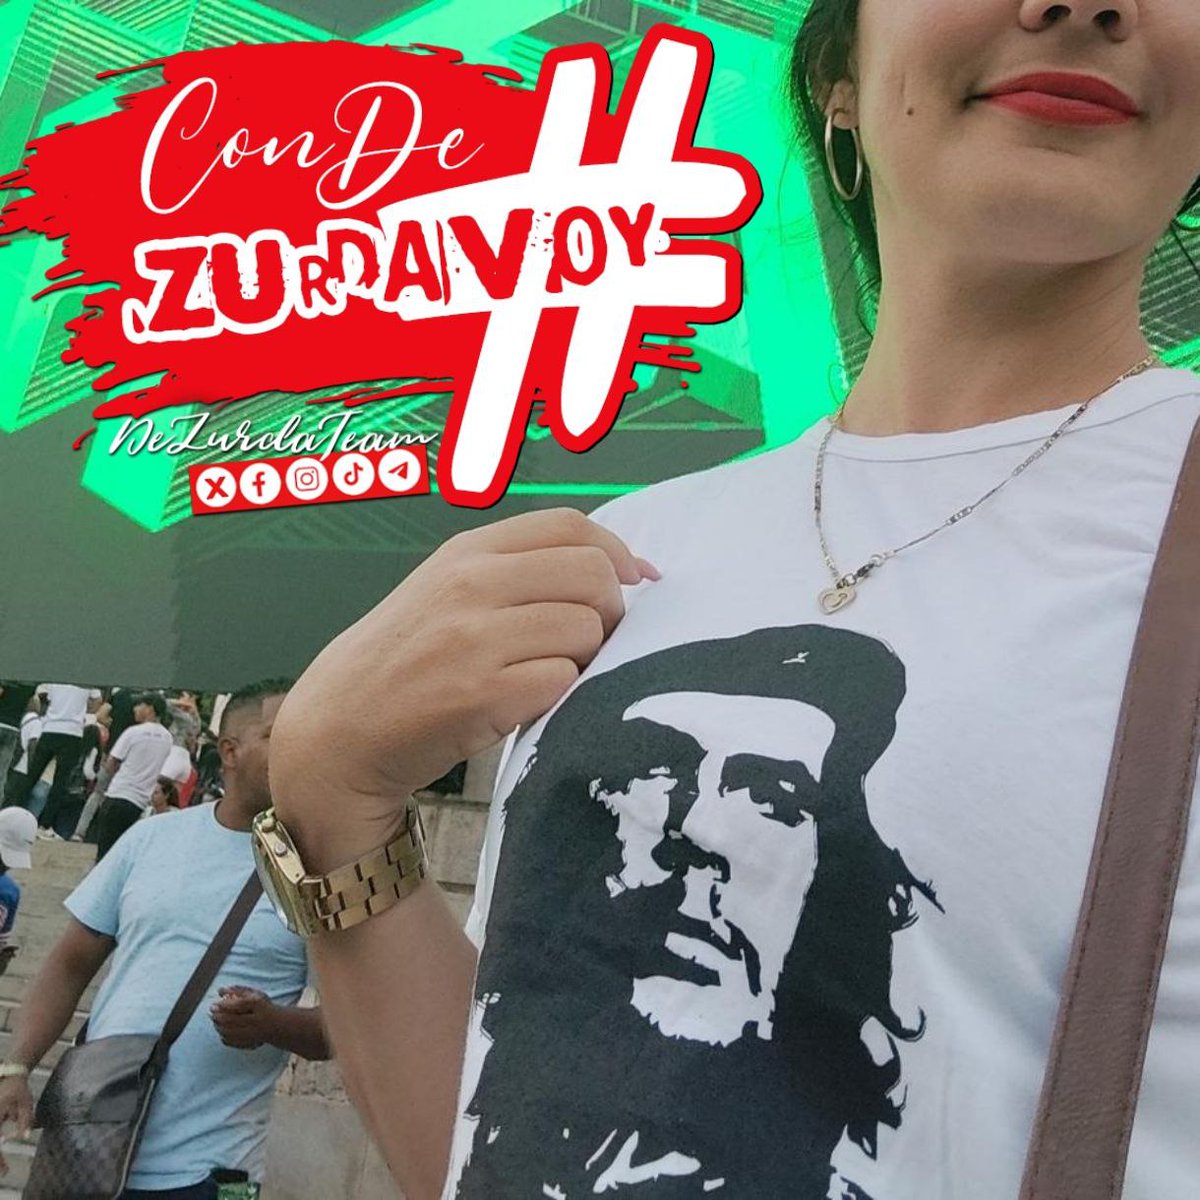 #ConDeZurdaVoy hacer latir los ♥️♥️ por nuestra historia #CheVive #DeZurdaTeam_ @DeZurdaTeam_